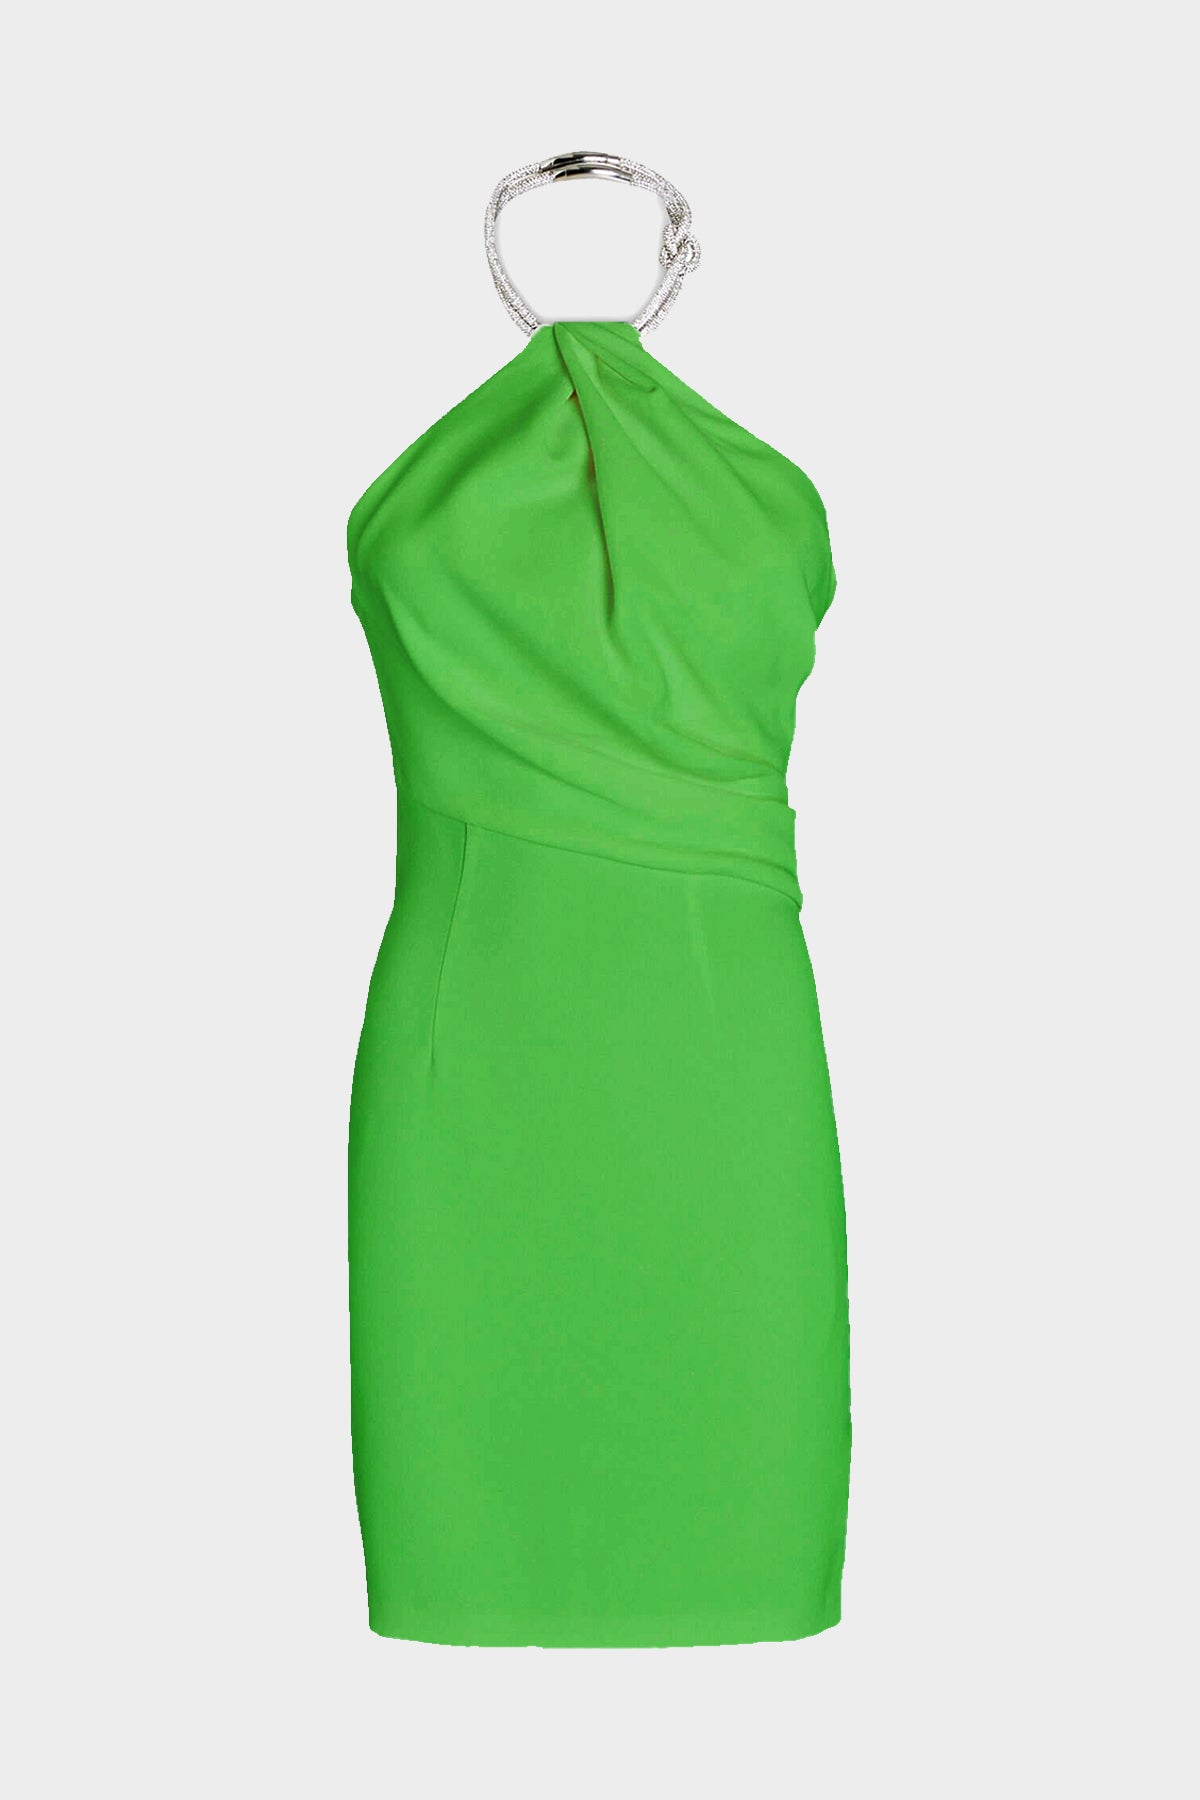 Kami Mini Dress in Green - shop-olivia.com